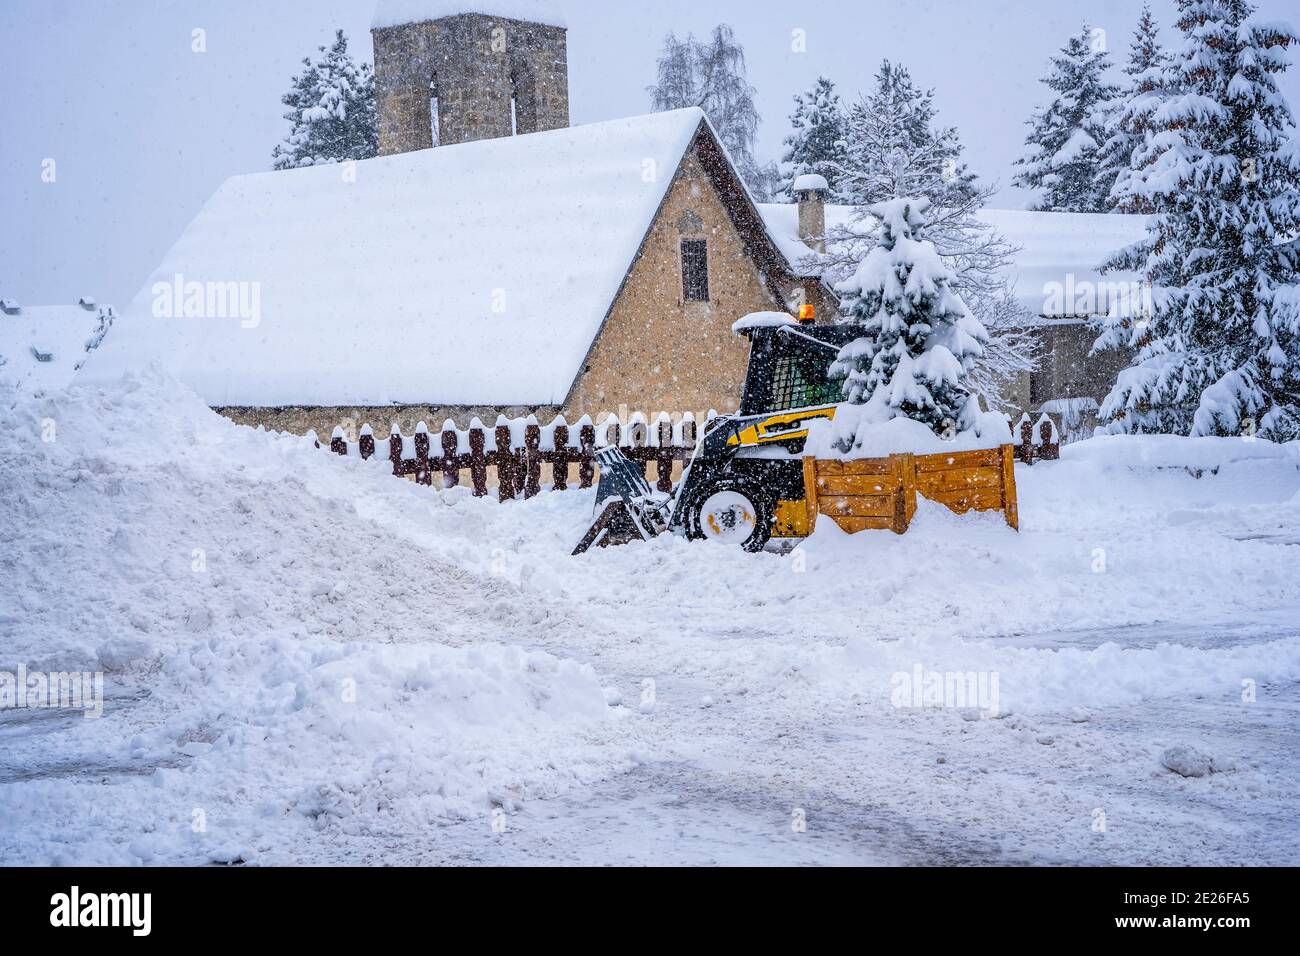 Auron, Francia - 01.01.2021: Pala gommata che rimuove la neve su una stazione sciistica. Eliminare la strada dalla neve. Foto di alta qualità Foto Stock